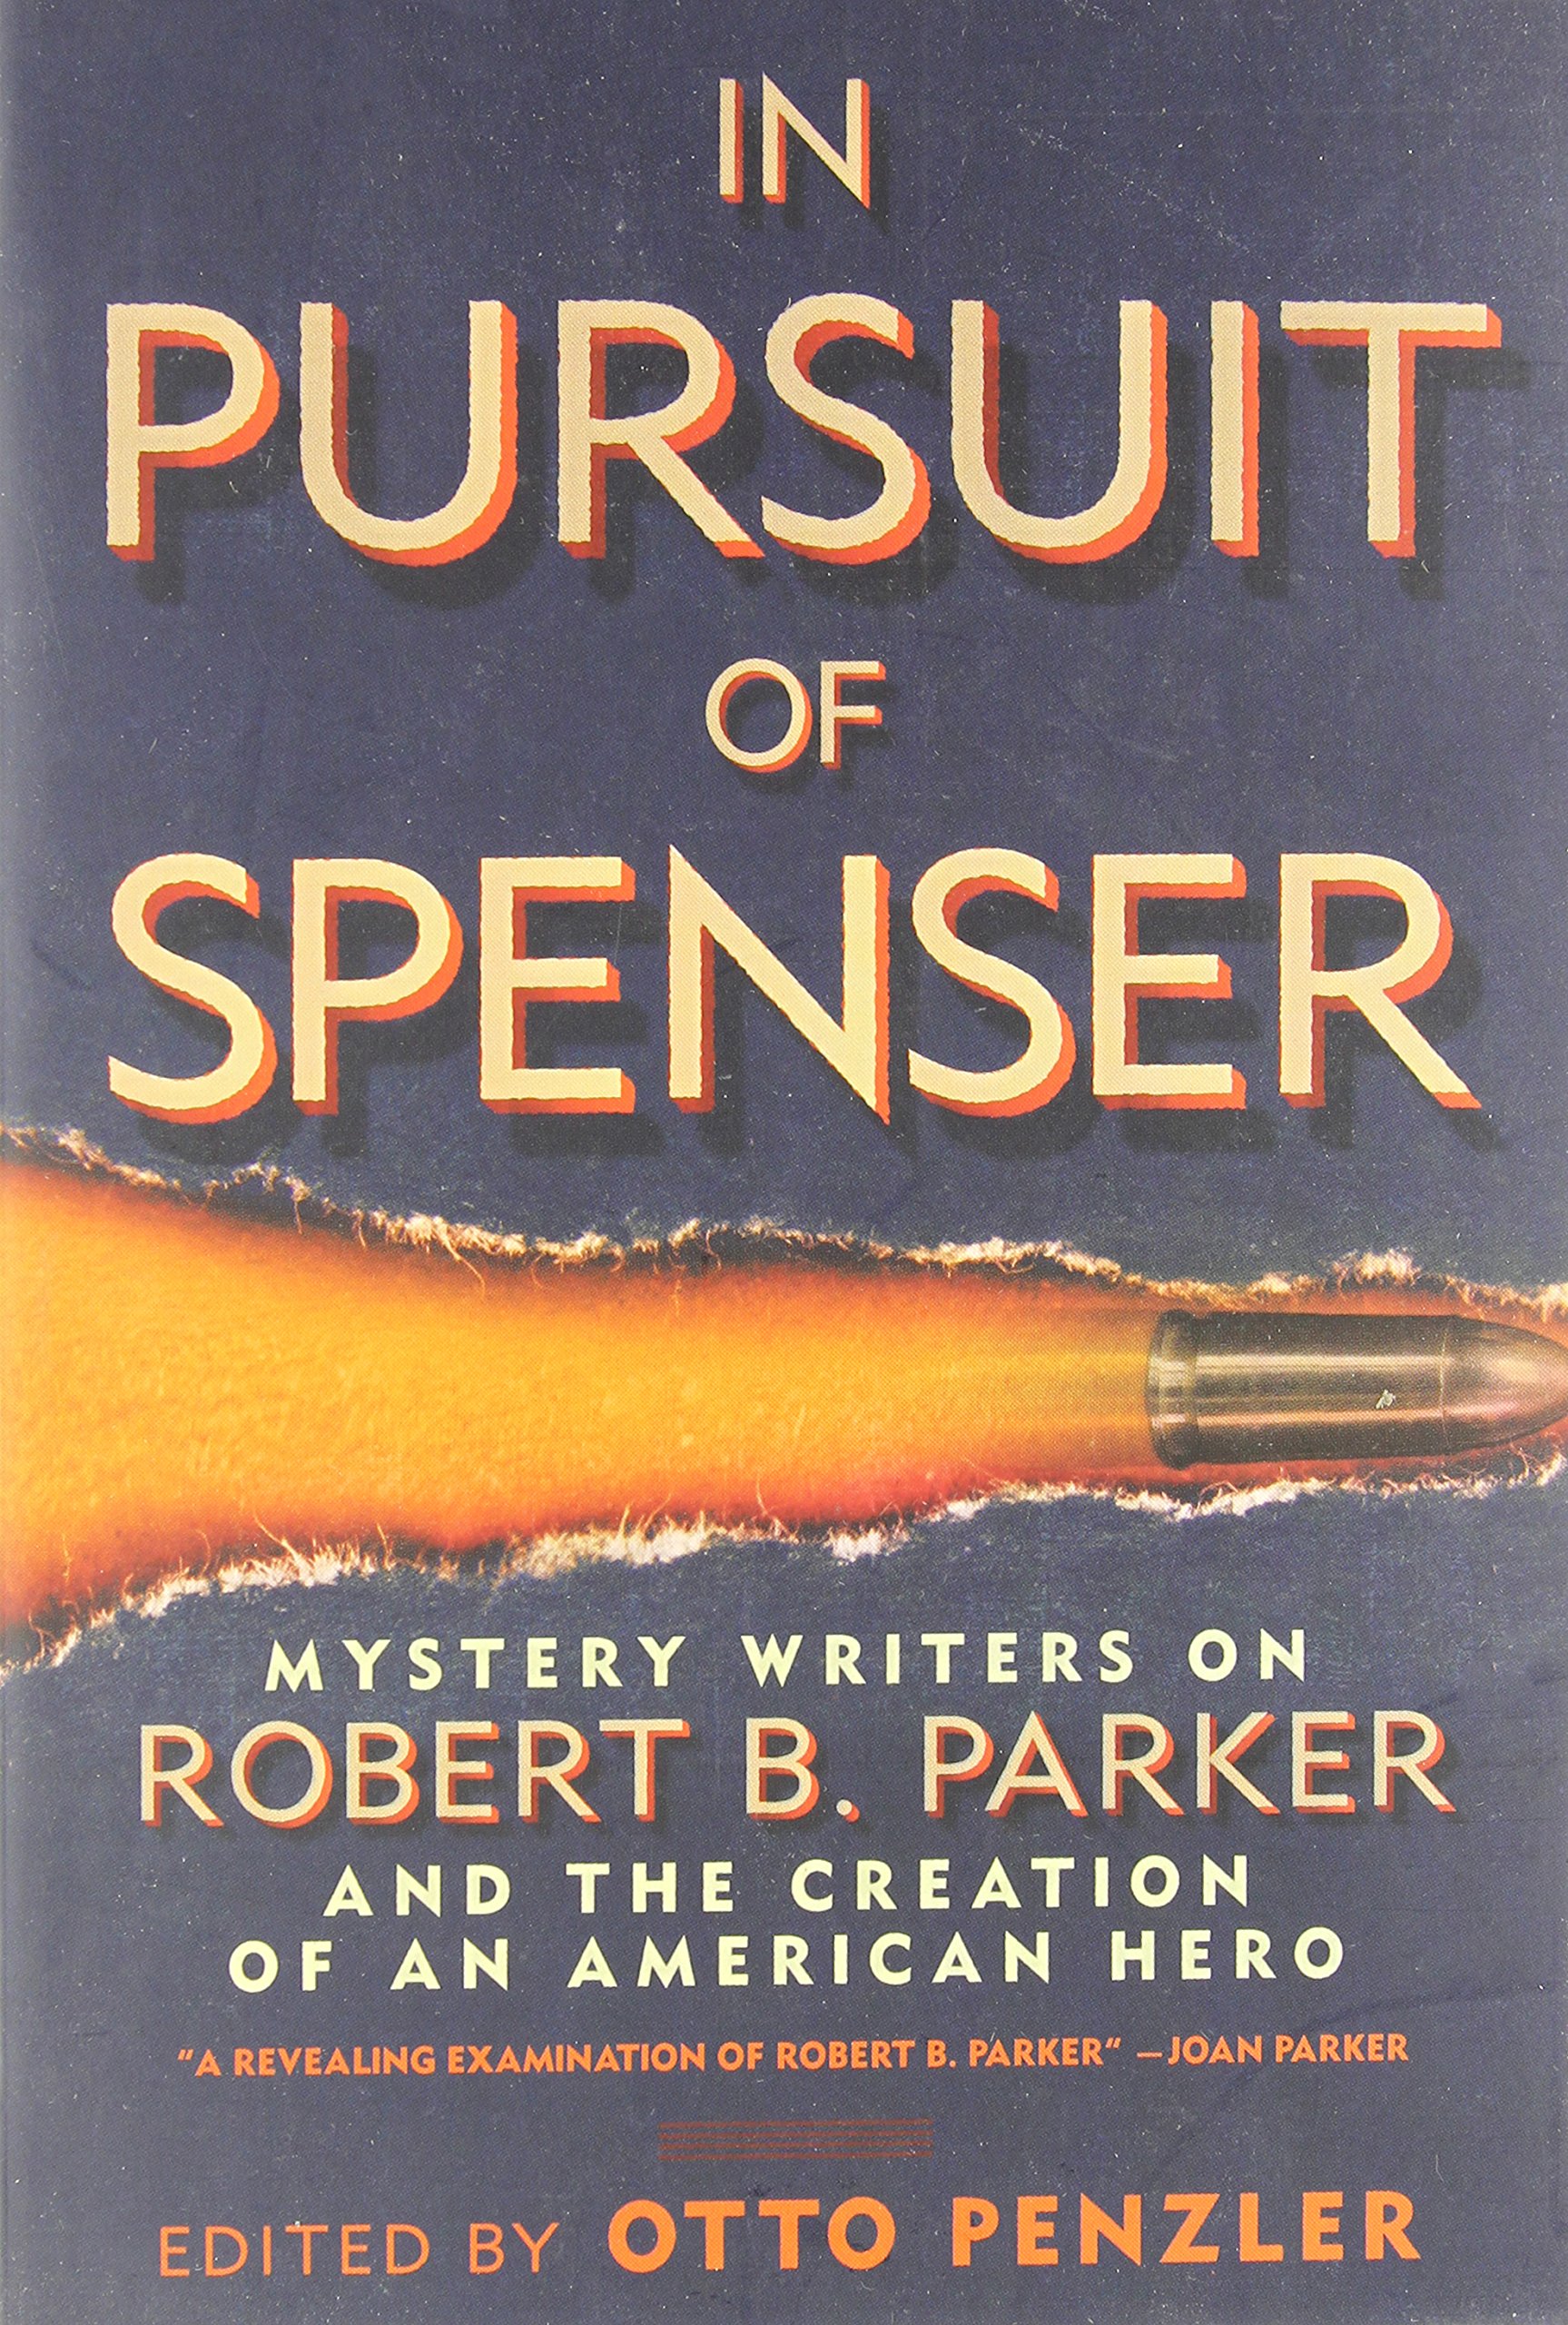 In Pursuit of Spenser